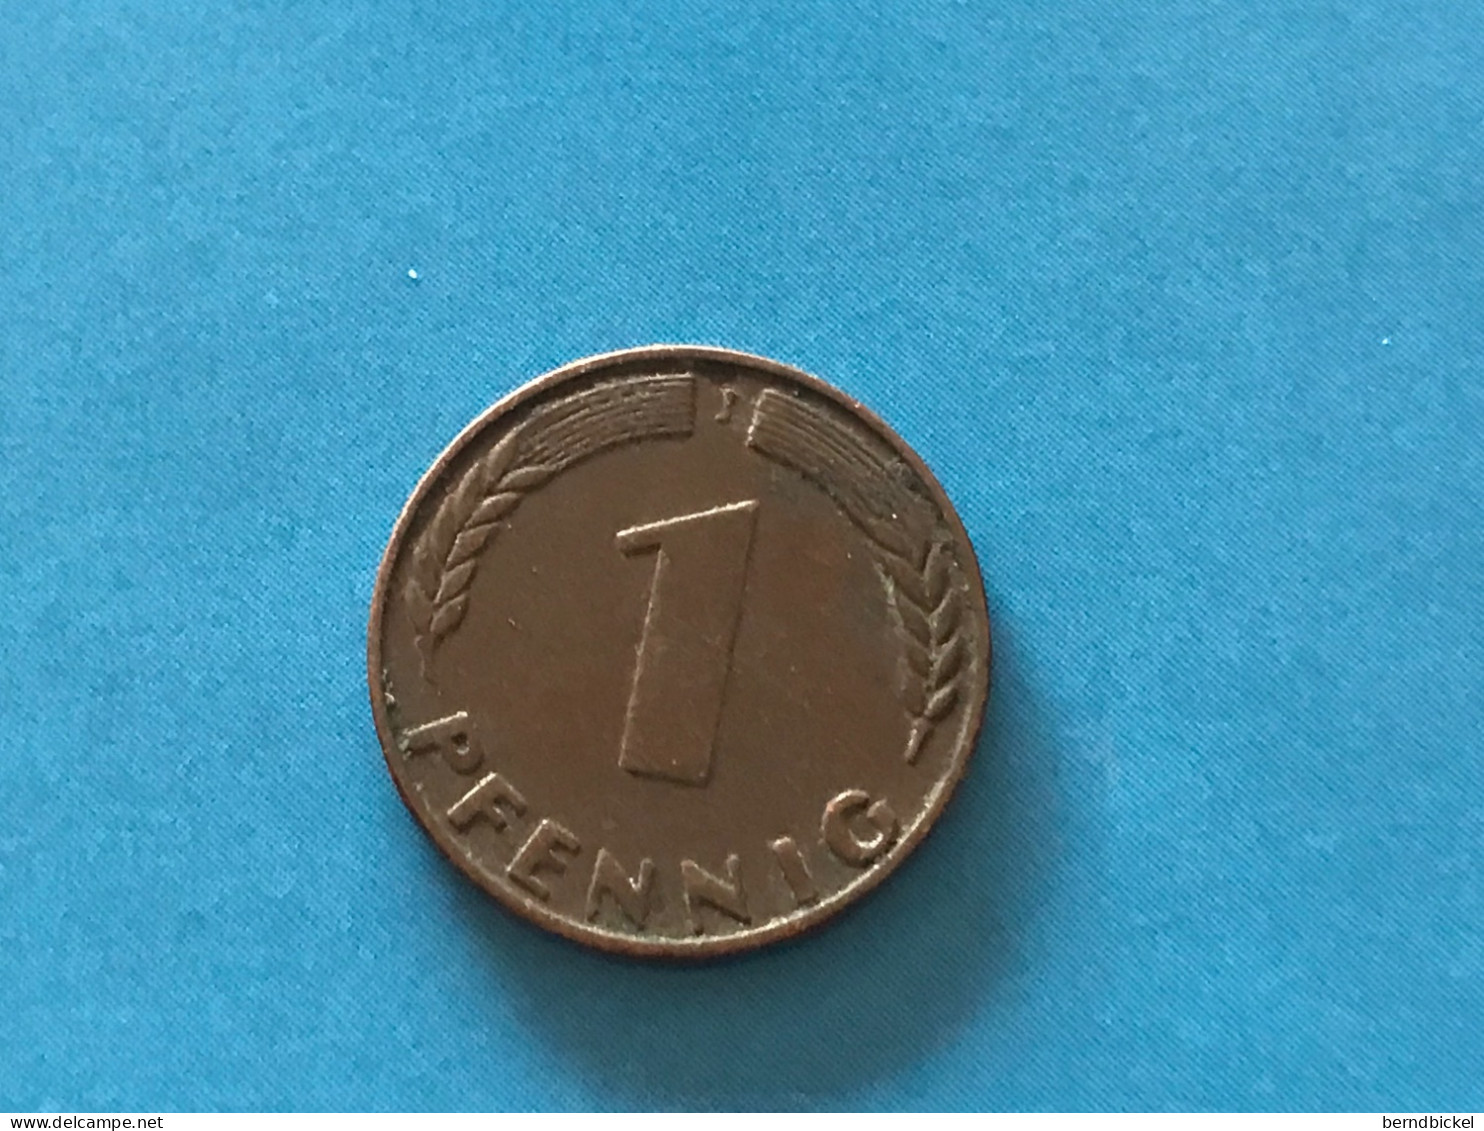 Münze Münzen Umlaufmünze Deutschland 1 Pfennig 1948 Münzzeichen J - 1 Pfennig